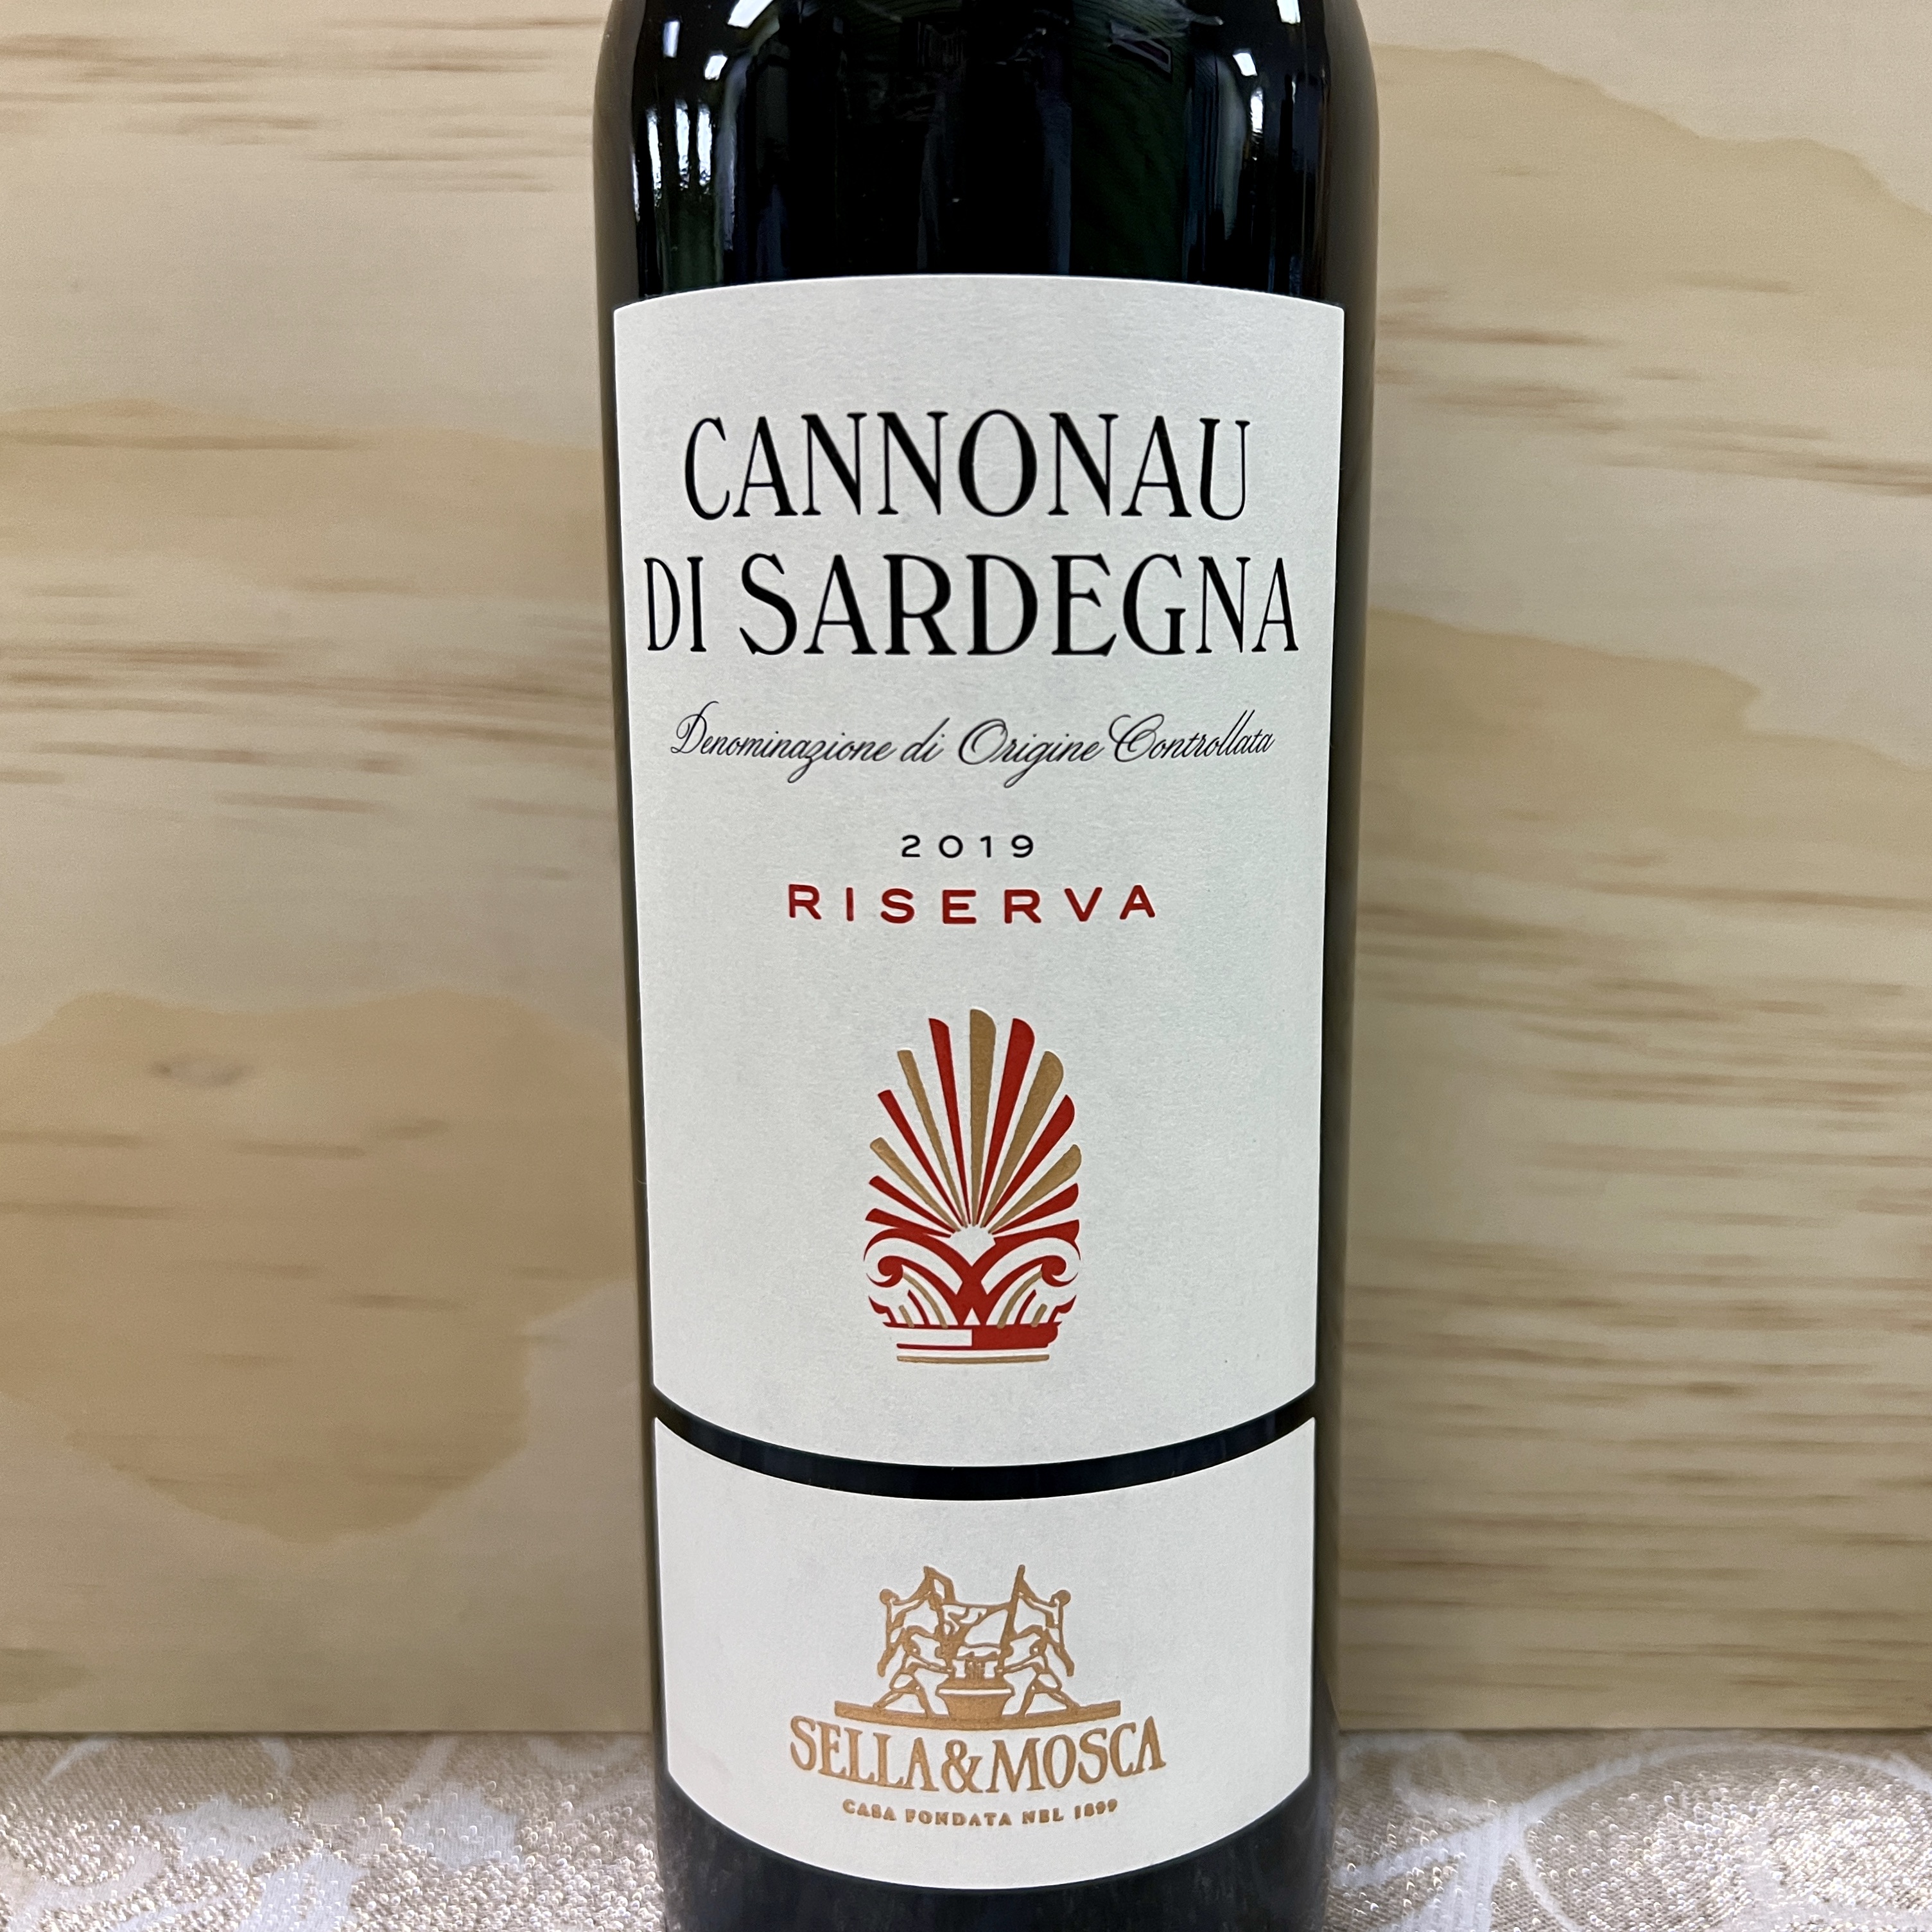 Sella & Mosca Cannonau Di Sardegna Riserva 2019